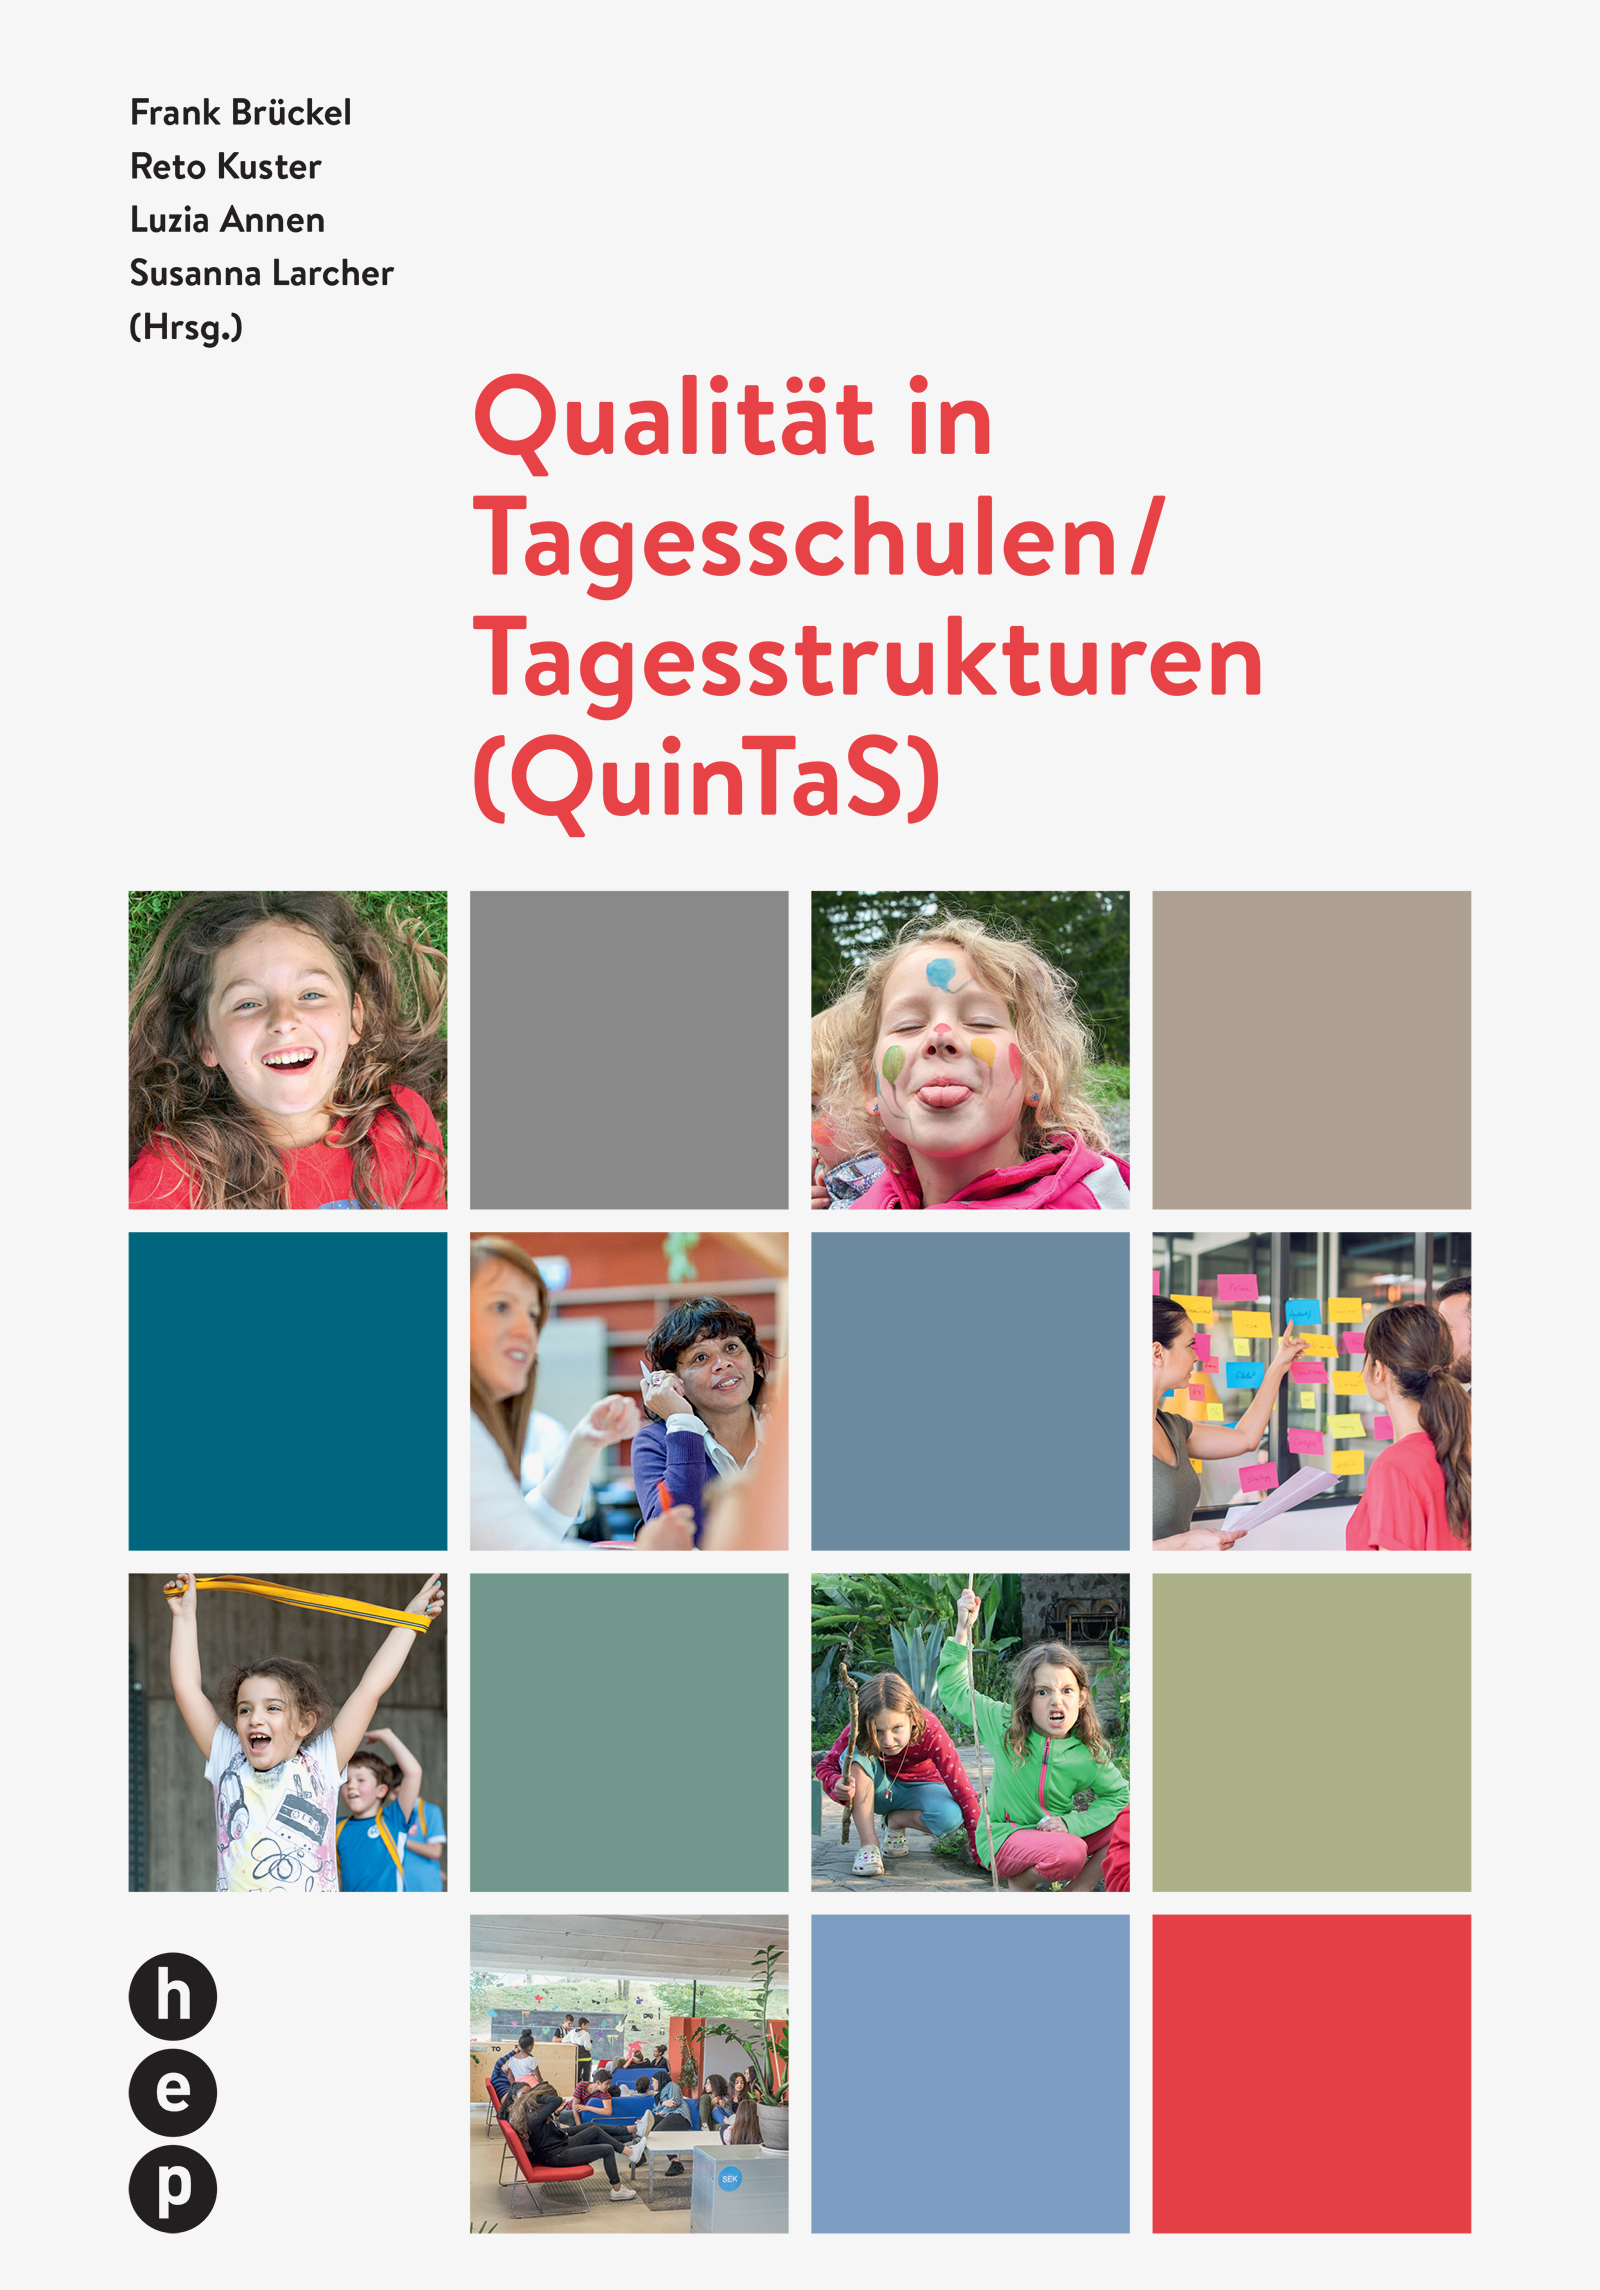 Produktabbildung von Qualität in Tagesschulen/ Tagesstrukturen (QuinTaS)